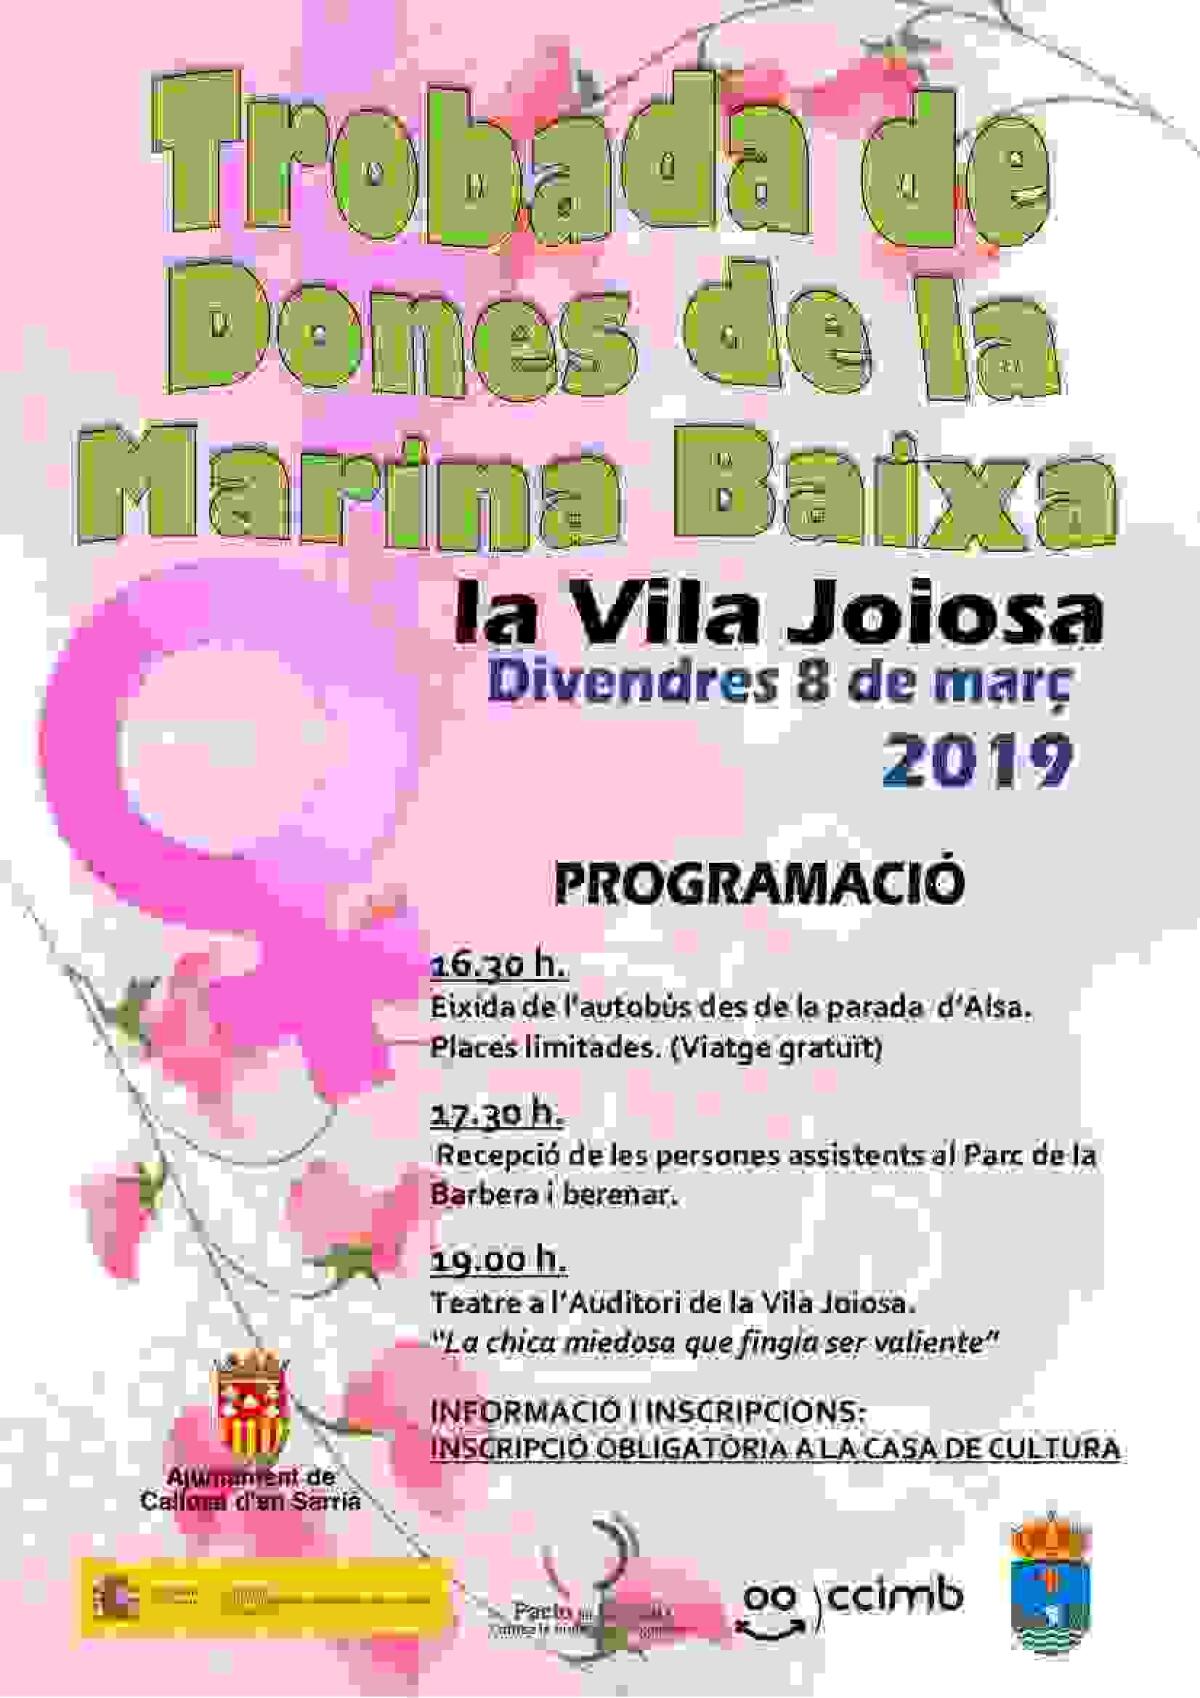 Callosa d’en Sarrià organiza una semana de actividades de concienciación para conmemorar el Día de la Mujer